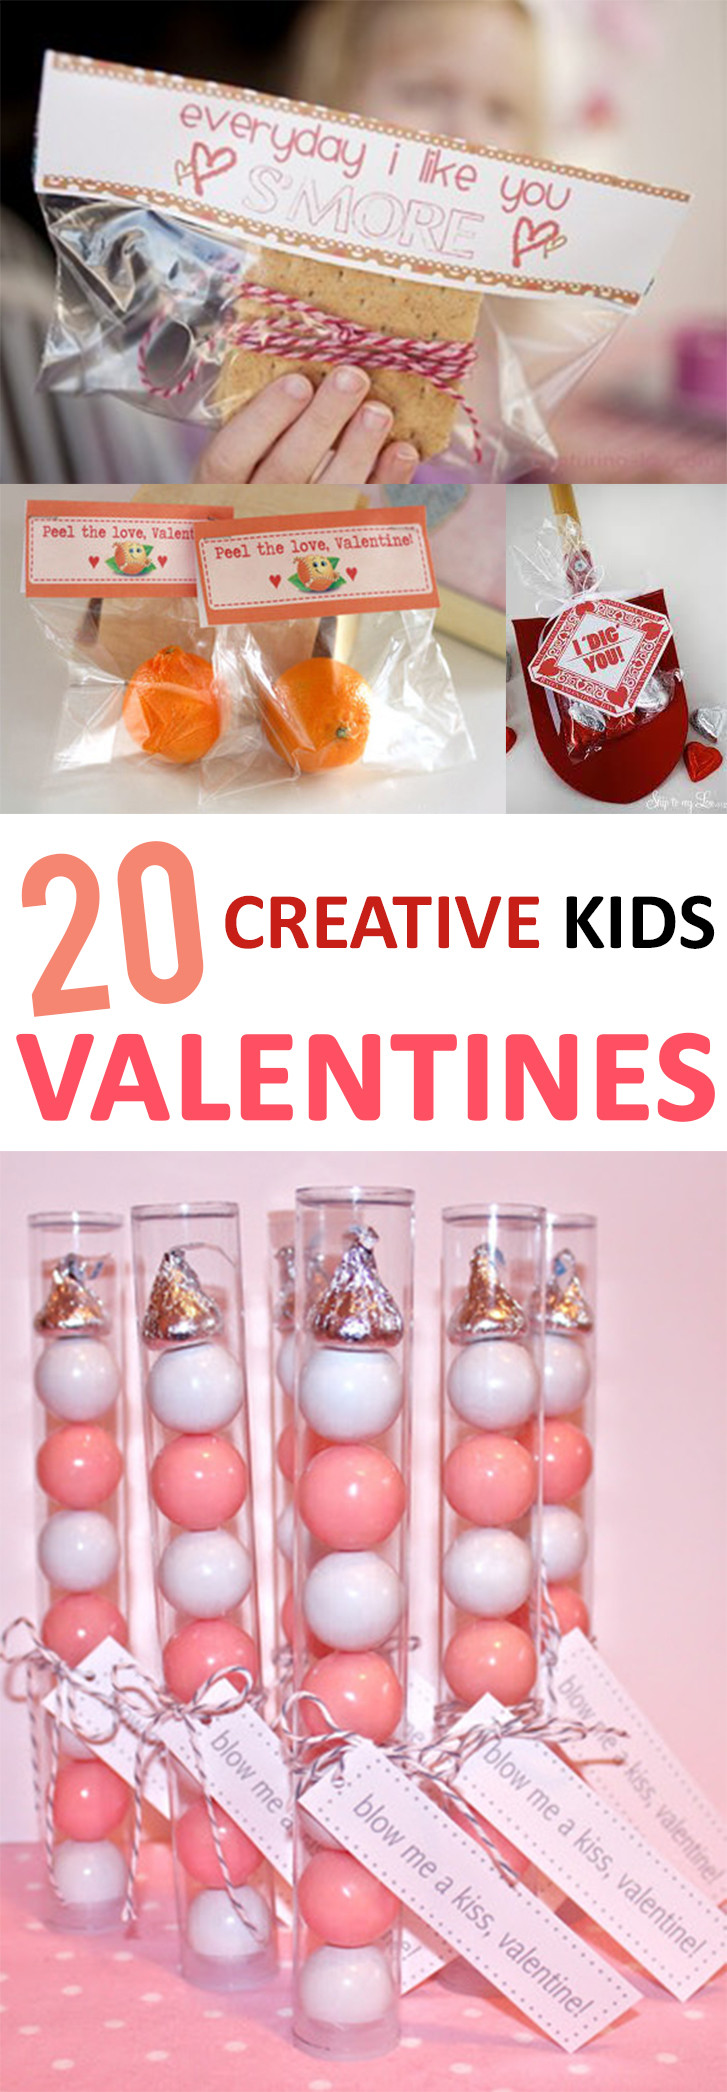 Valentines Creative Gift Ideas
 20 Creative Kid s Valentines